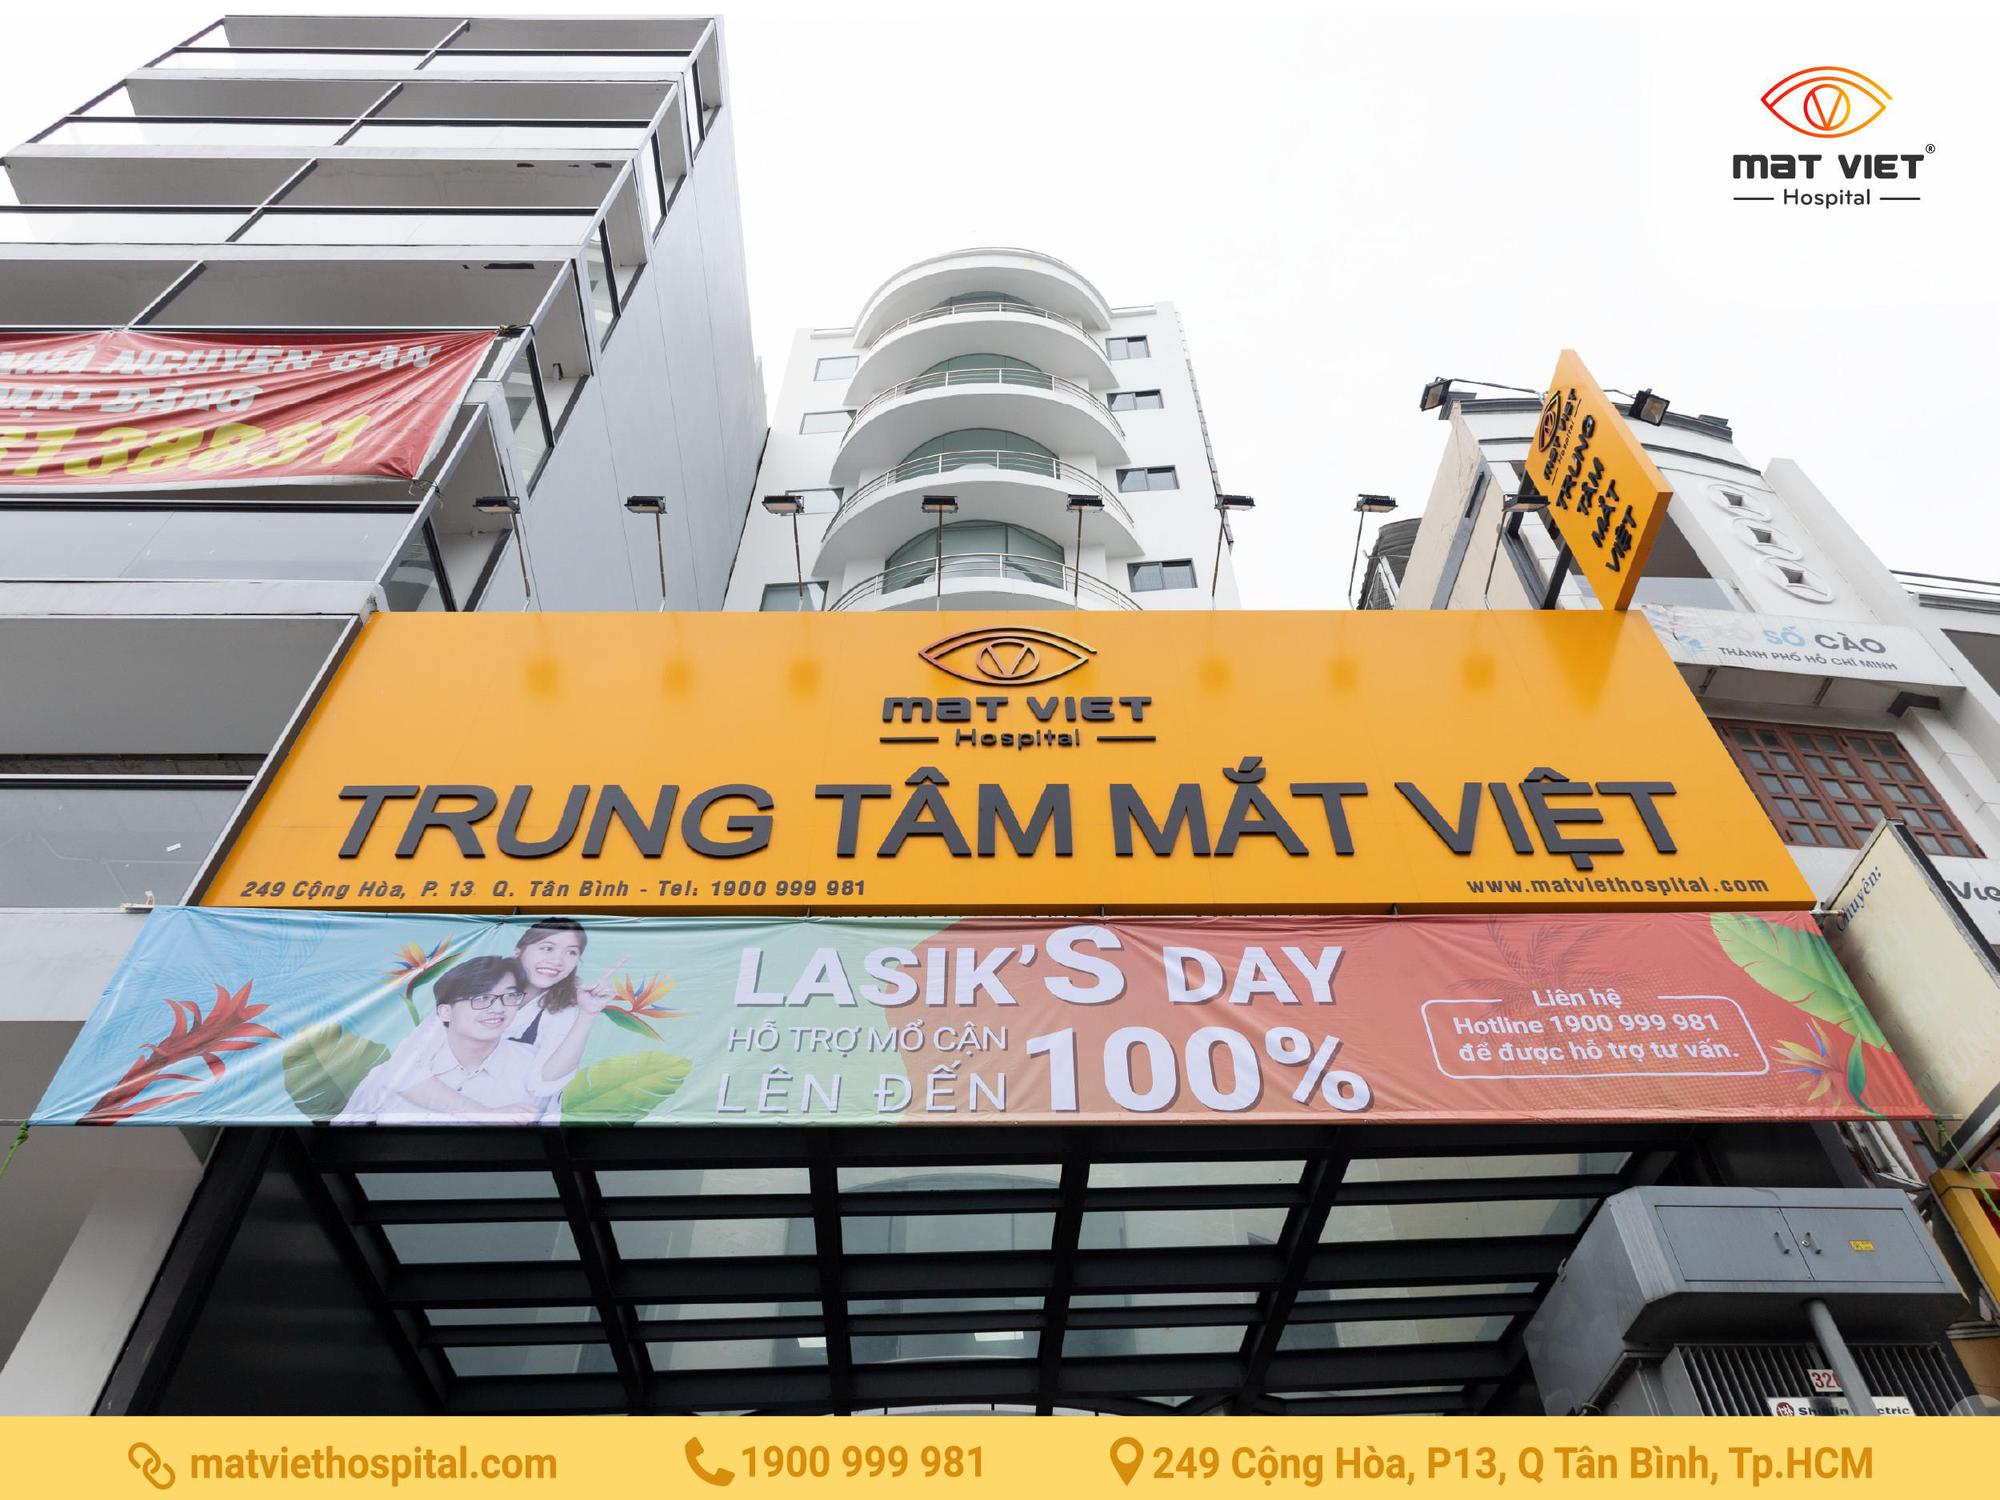 LASIK’S DAY: Đừng bỏ lỡ giai đoạn cuối với mức hỗ trợ vô cùng hấp dẫn của Trung tâm Mắt Việt Cộng Hòa - Ảnh 1.